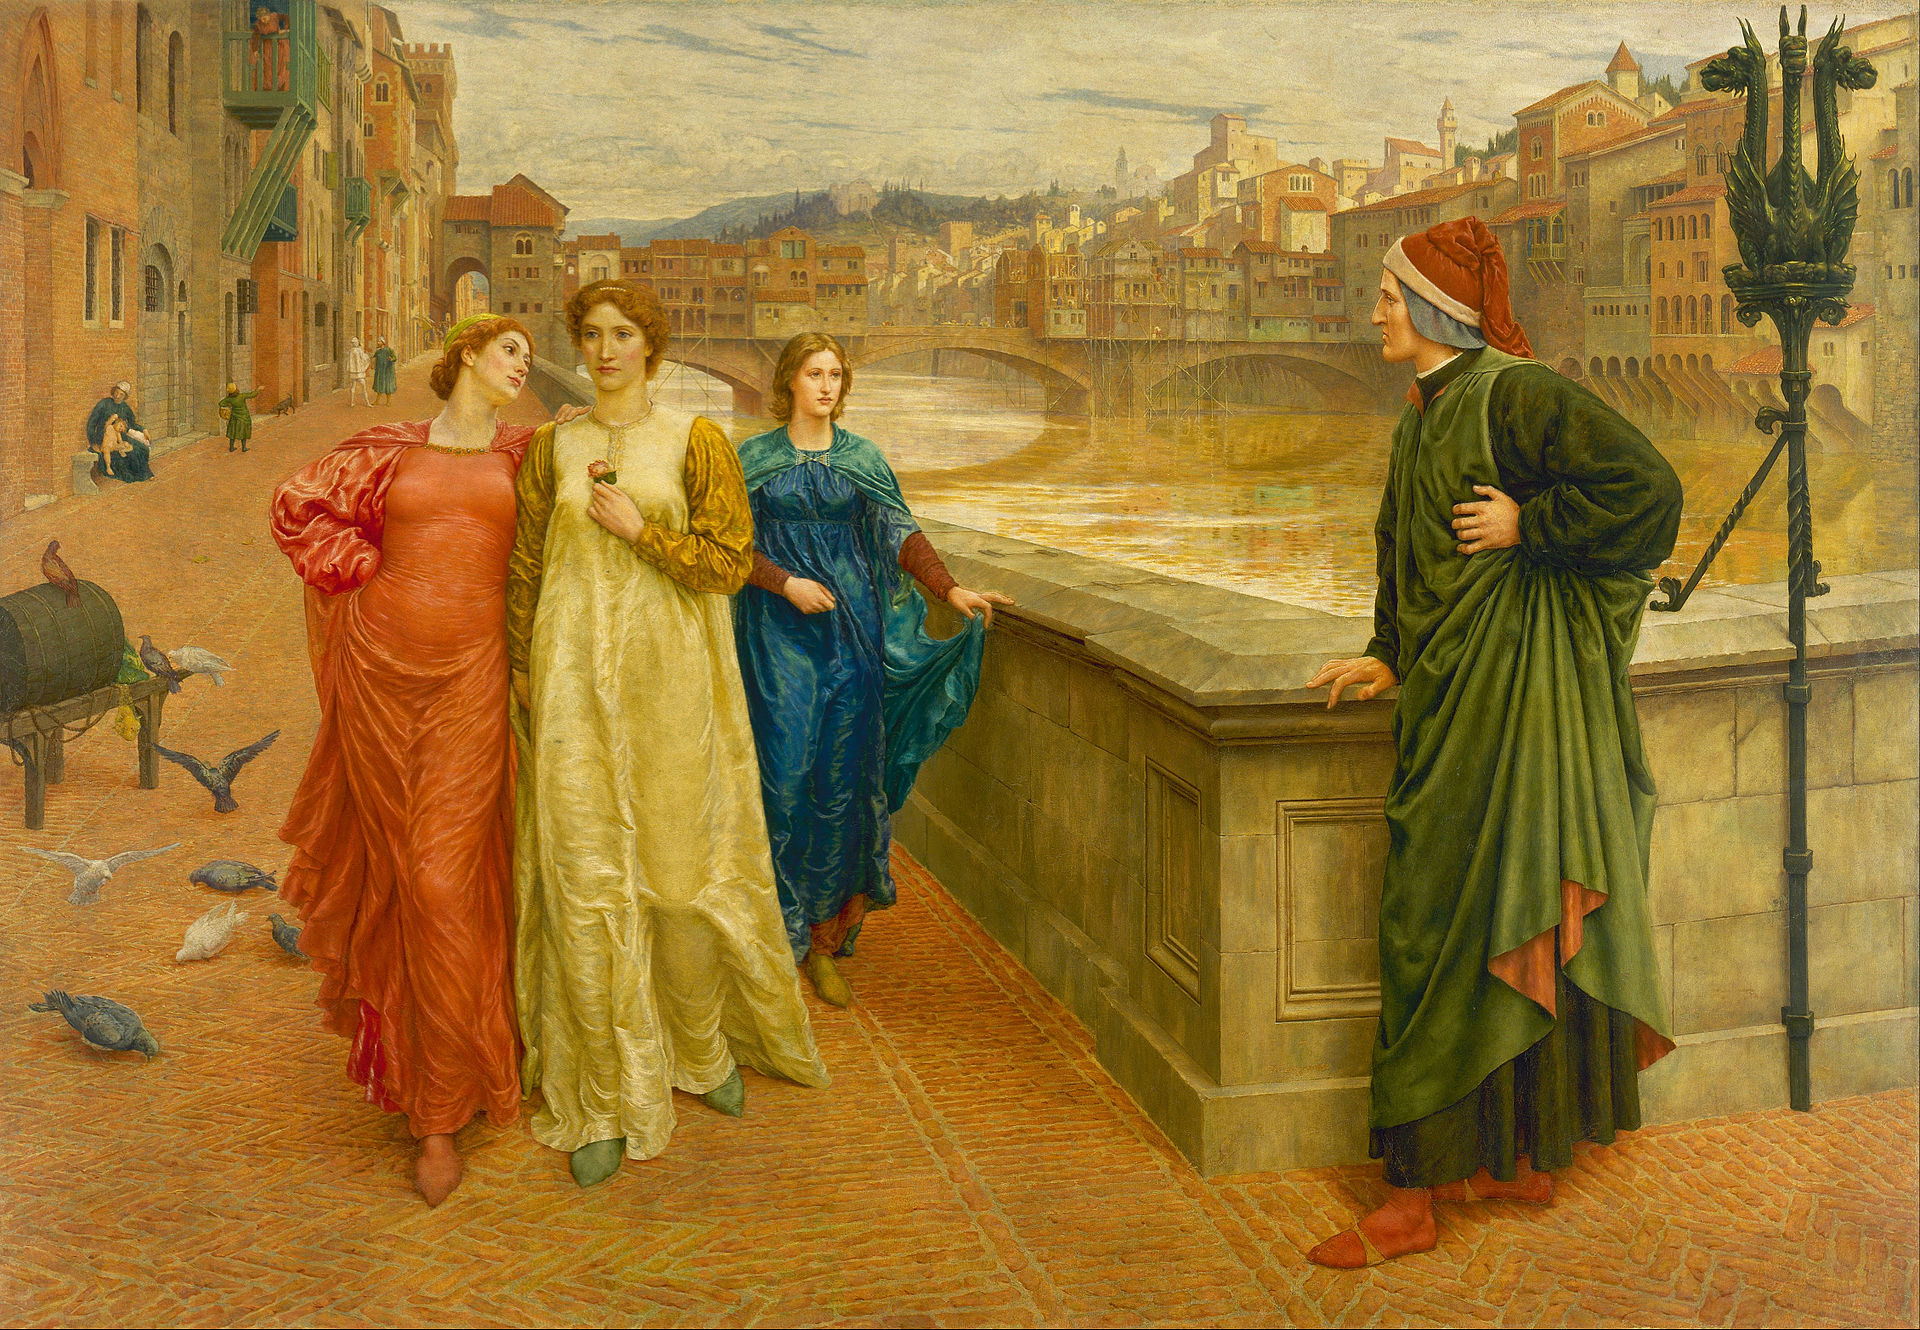 但丁和貝緹麗彩 by Henry Holiday - 1882 年或 1884 年 - 142.2 x 203.2 釐米 